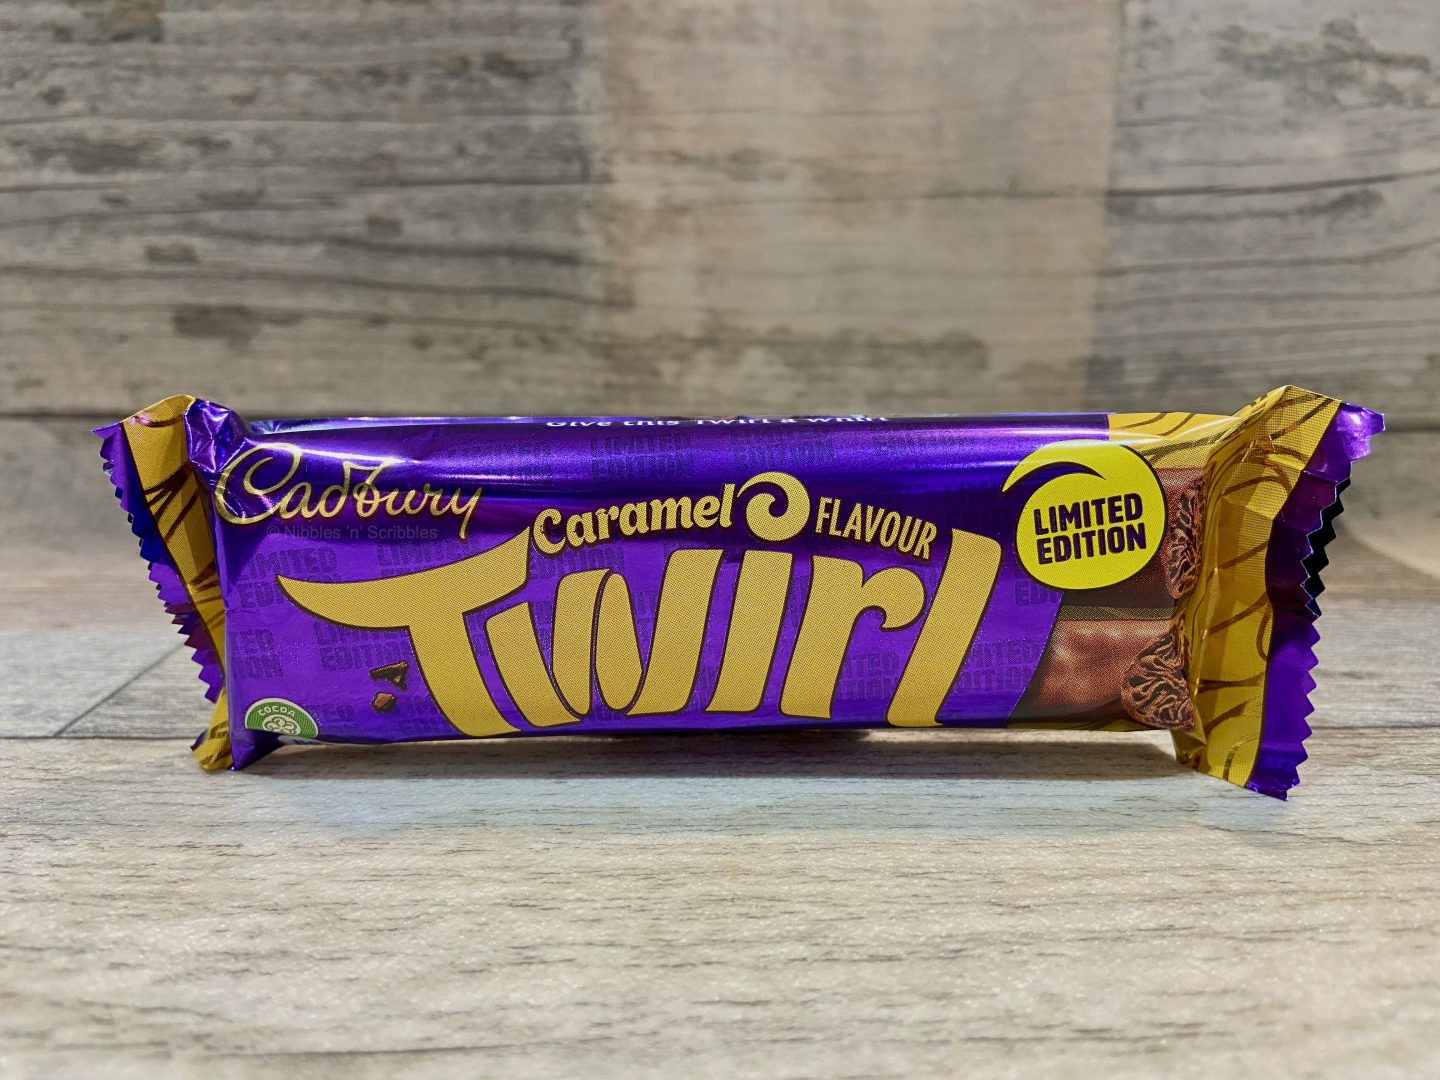 Limited Edition Cadbury Caramel Twirl